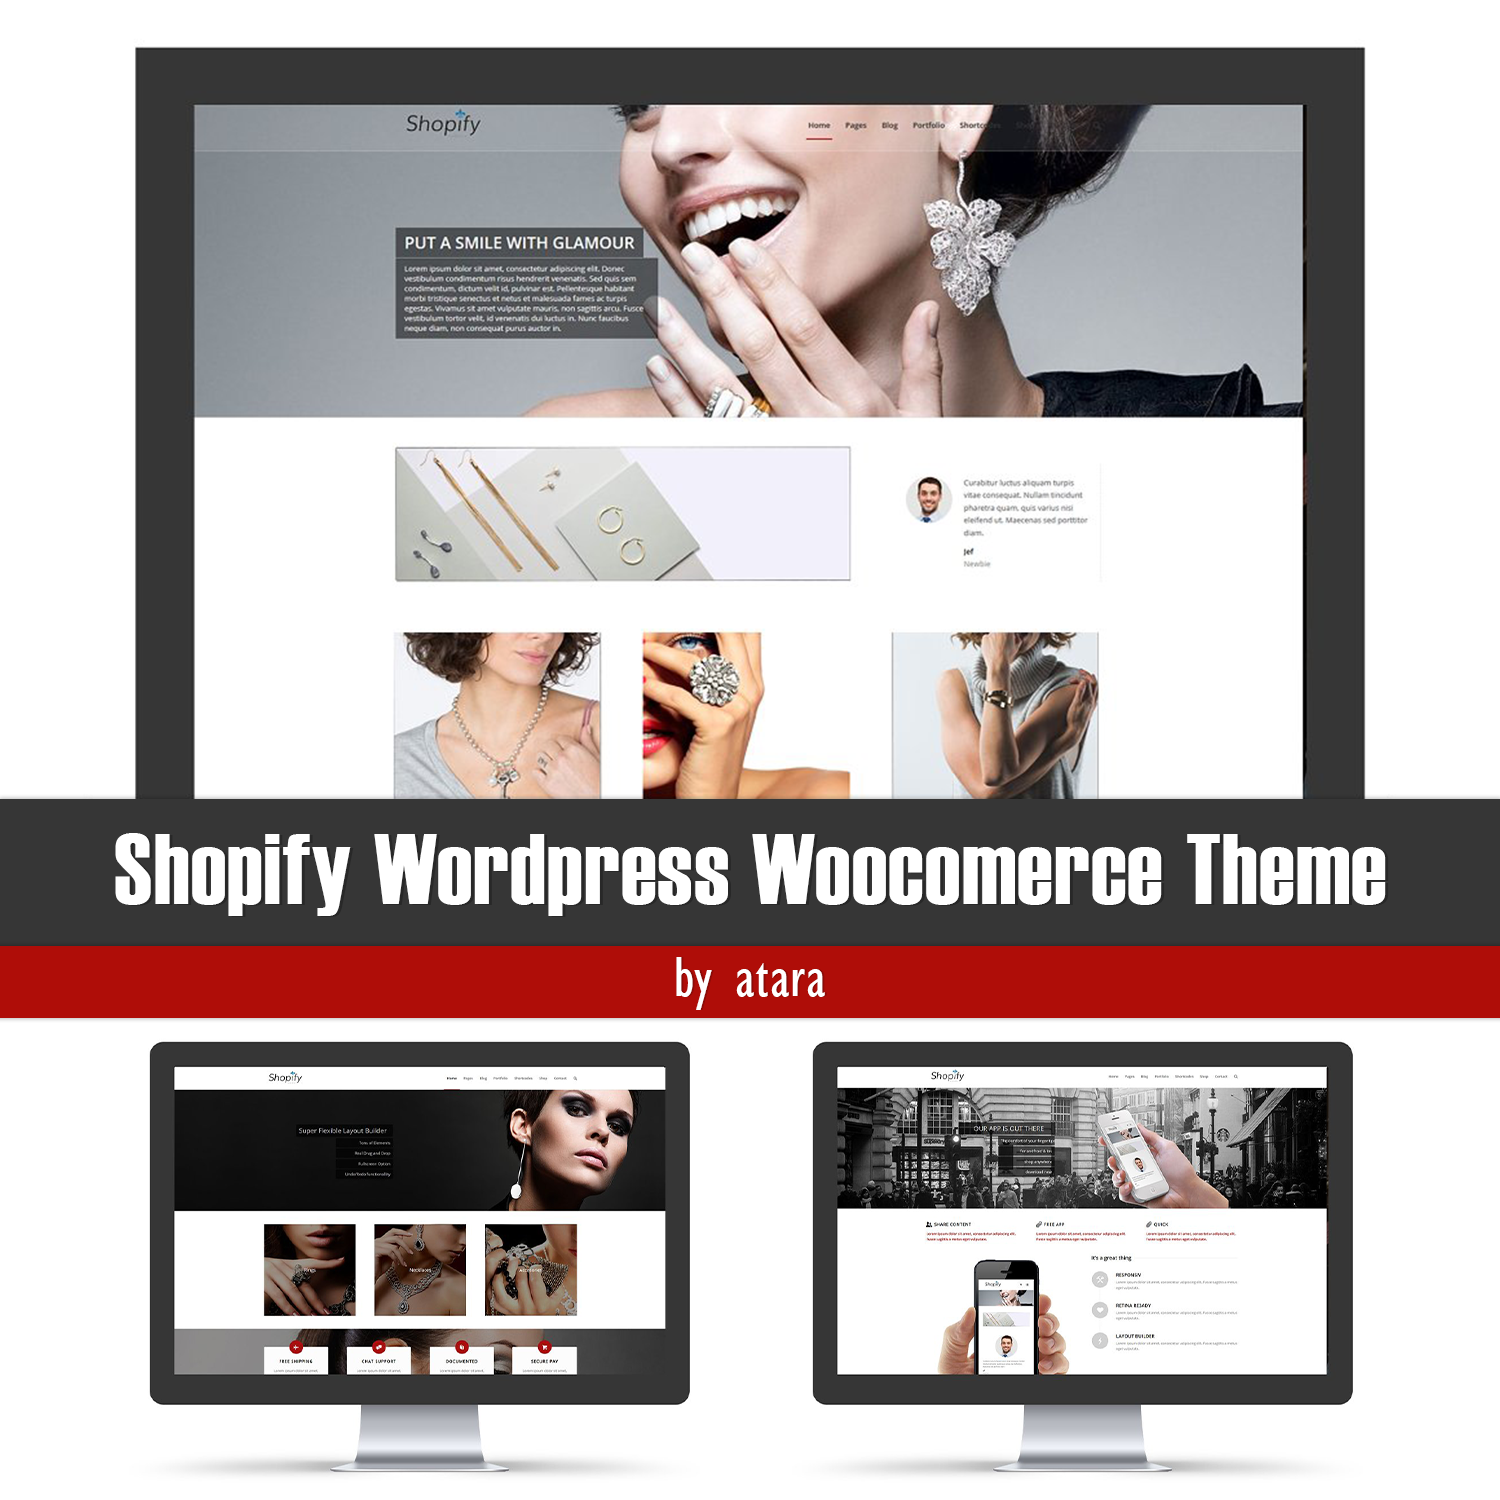 Preview shopify wordpress woocomerce theme.